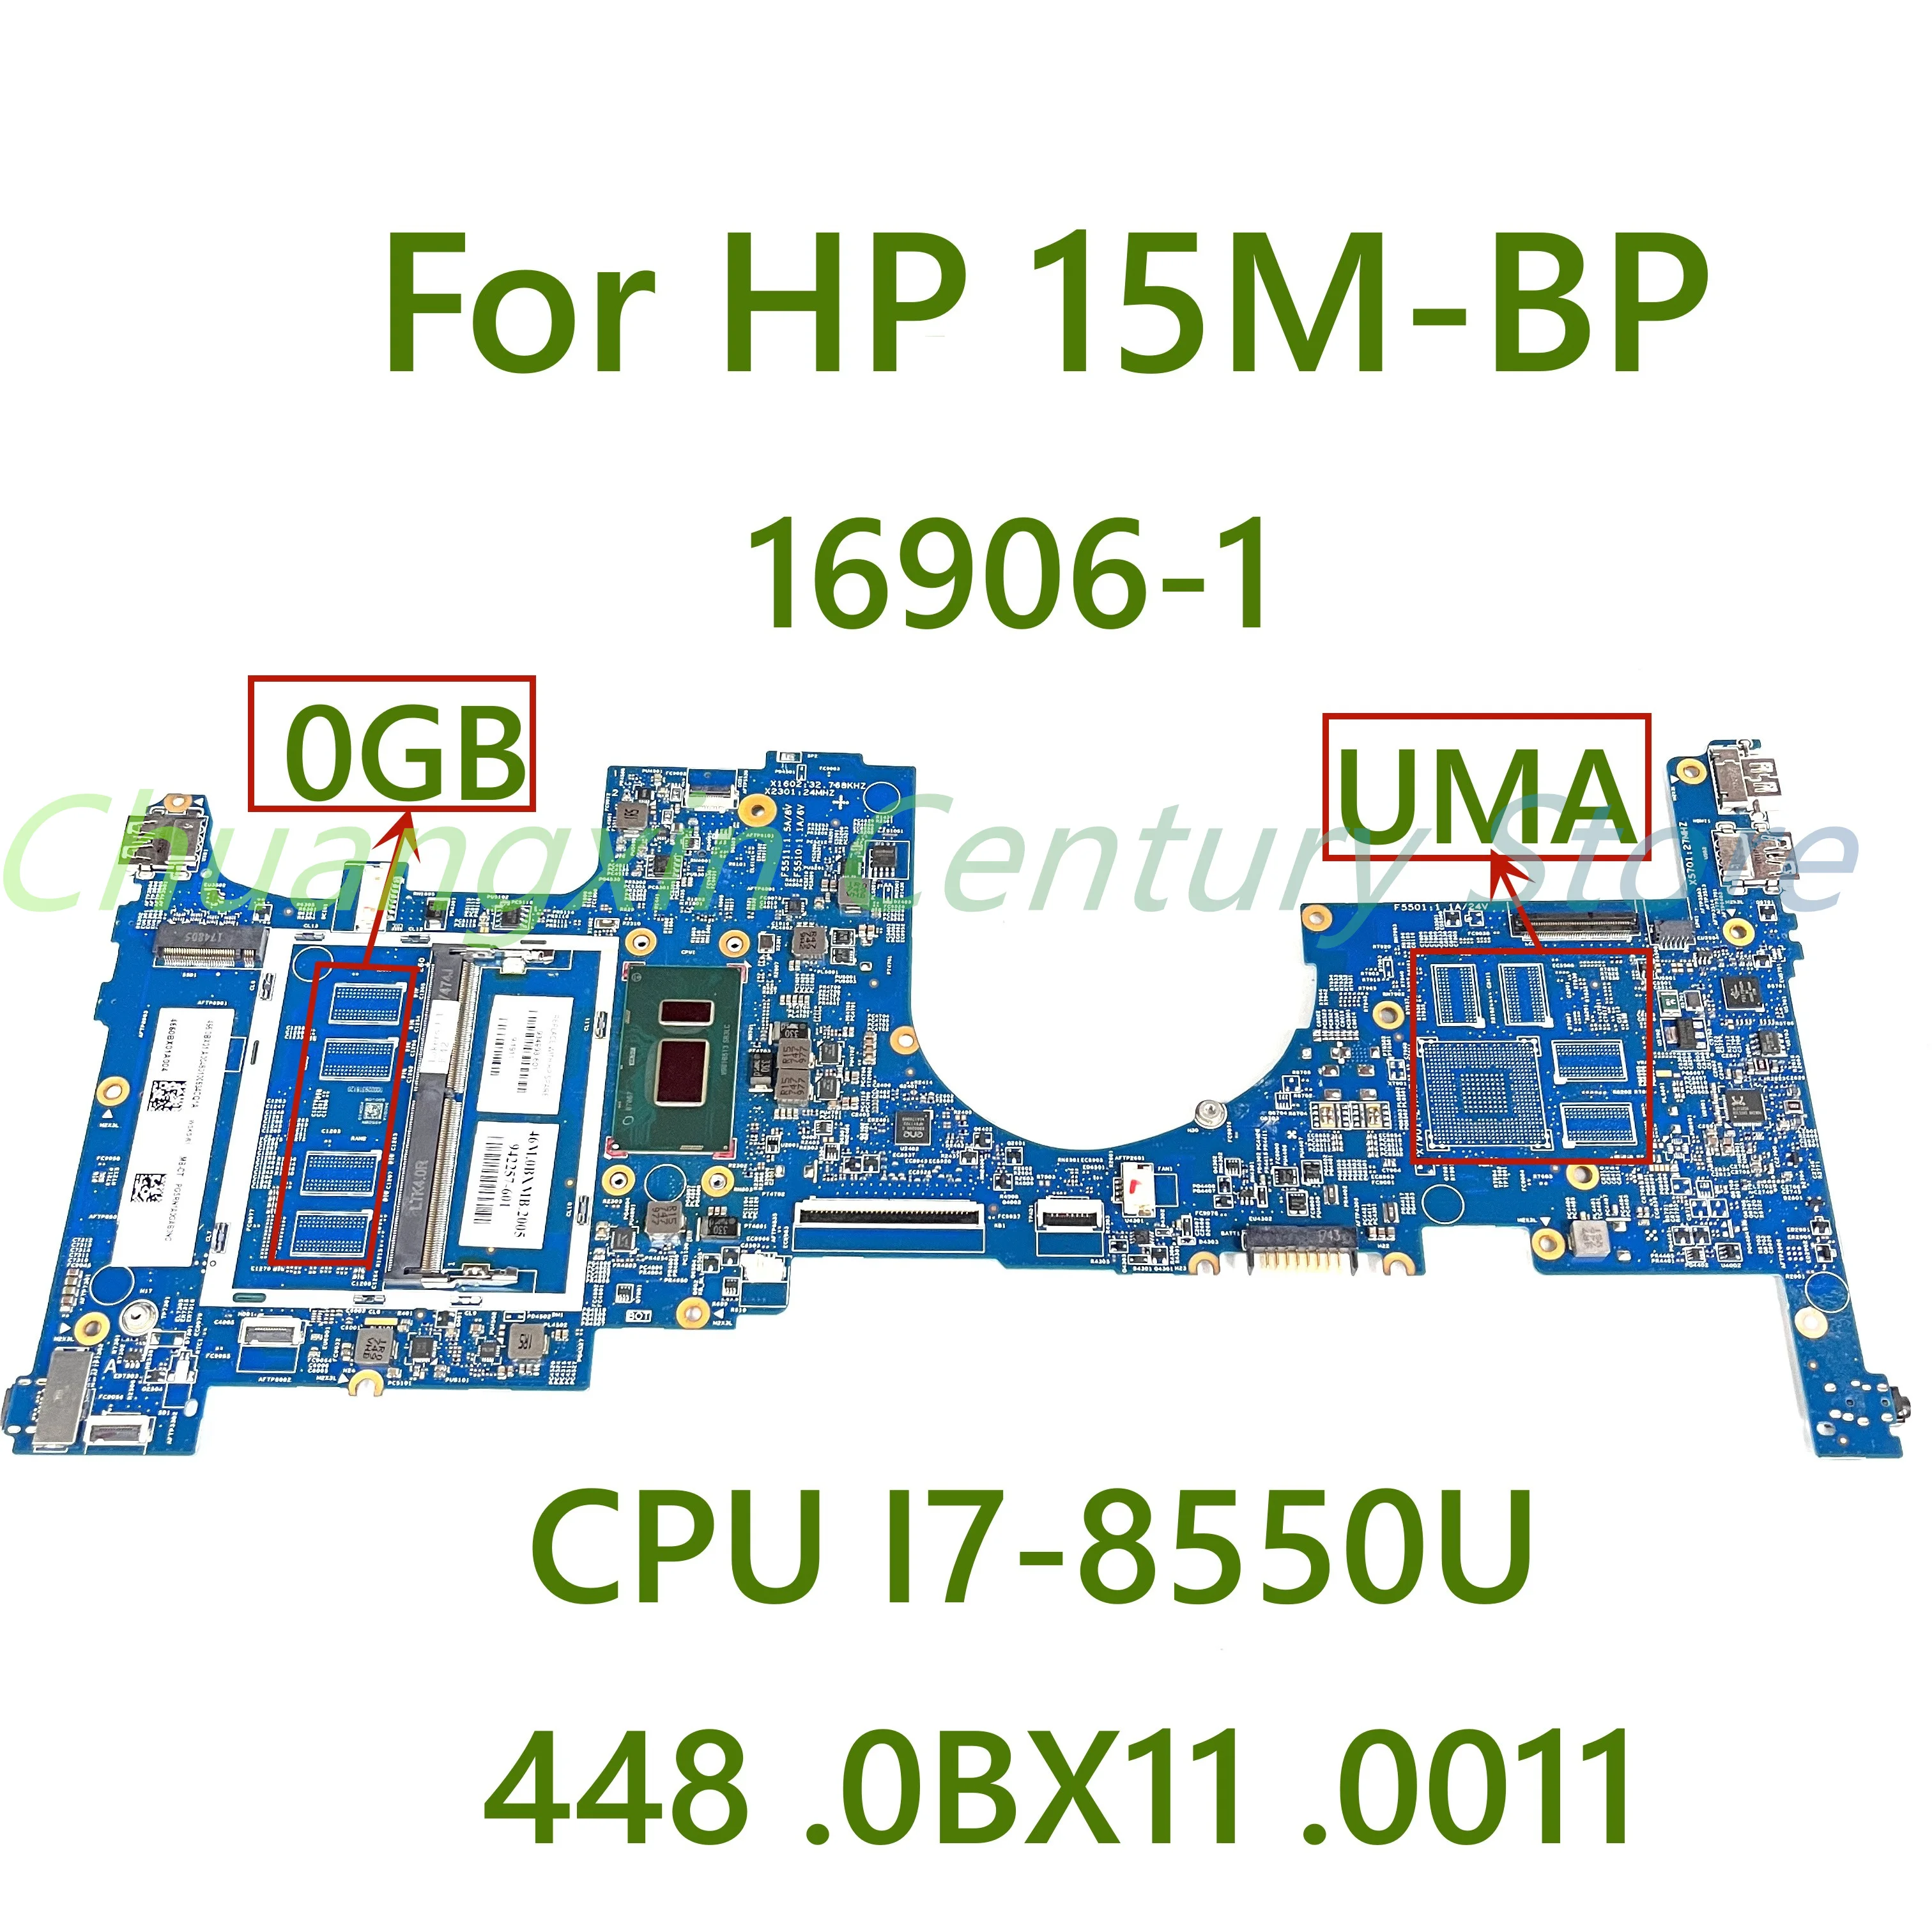 

448. 0BX11. Материнская плата для ноутбука HP 15M-BP 0011-1 с процессором I7-8550U 16906, протестирована, полностью работает